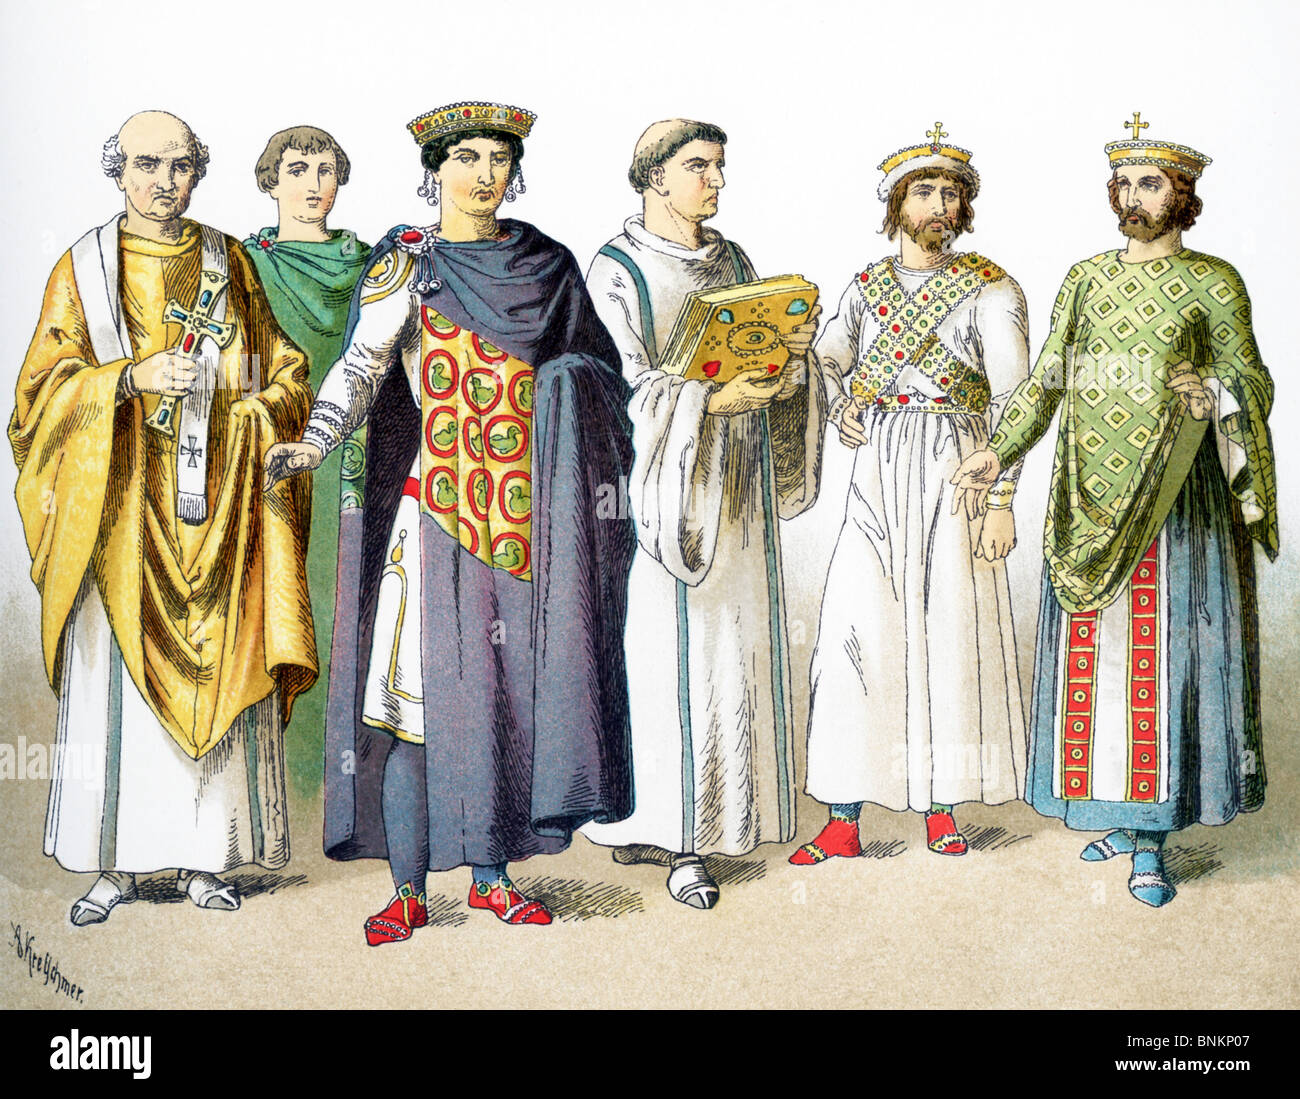 Les chiffres de l'Époque byzantine (de 300 à 700) sont : l'Évêque Maximianus, noble, l'empereur Justinien, prêtre, empereurs Phocas et Justinien. Banque D'Images